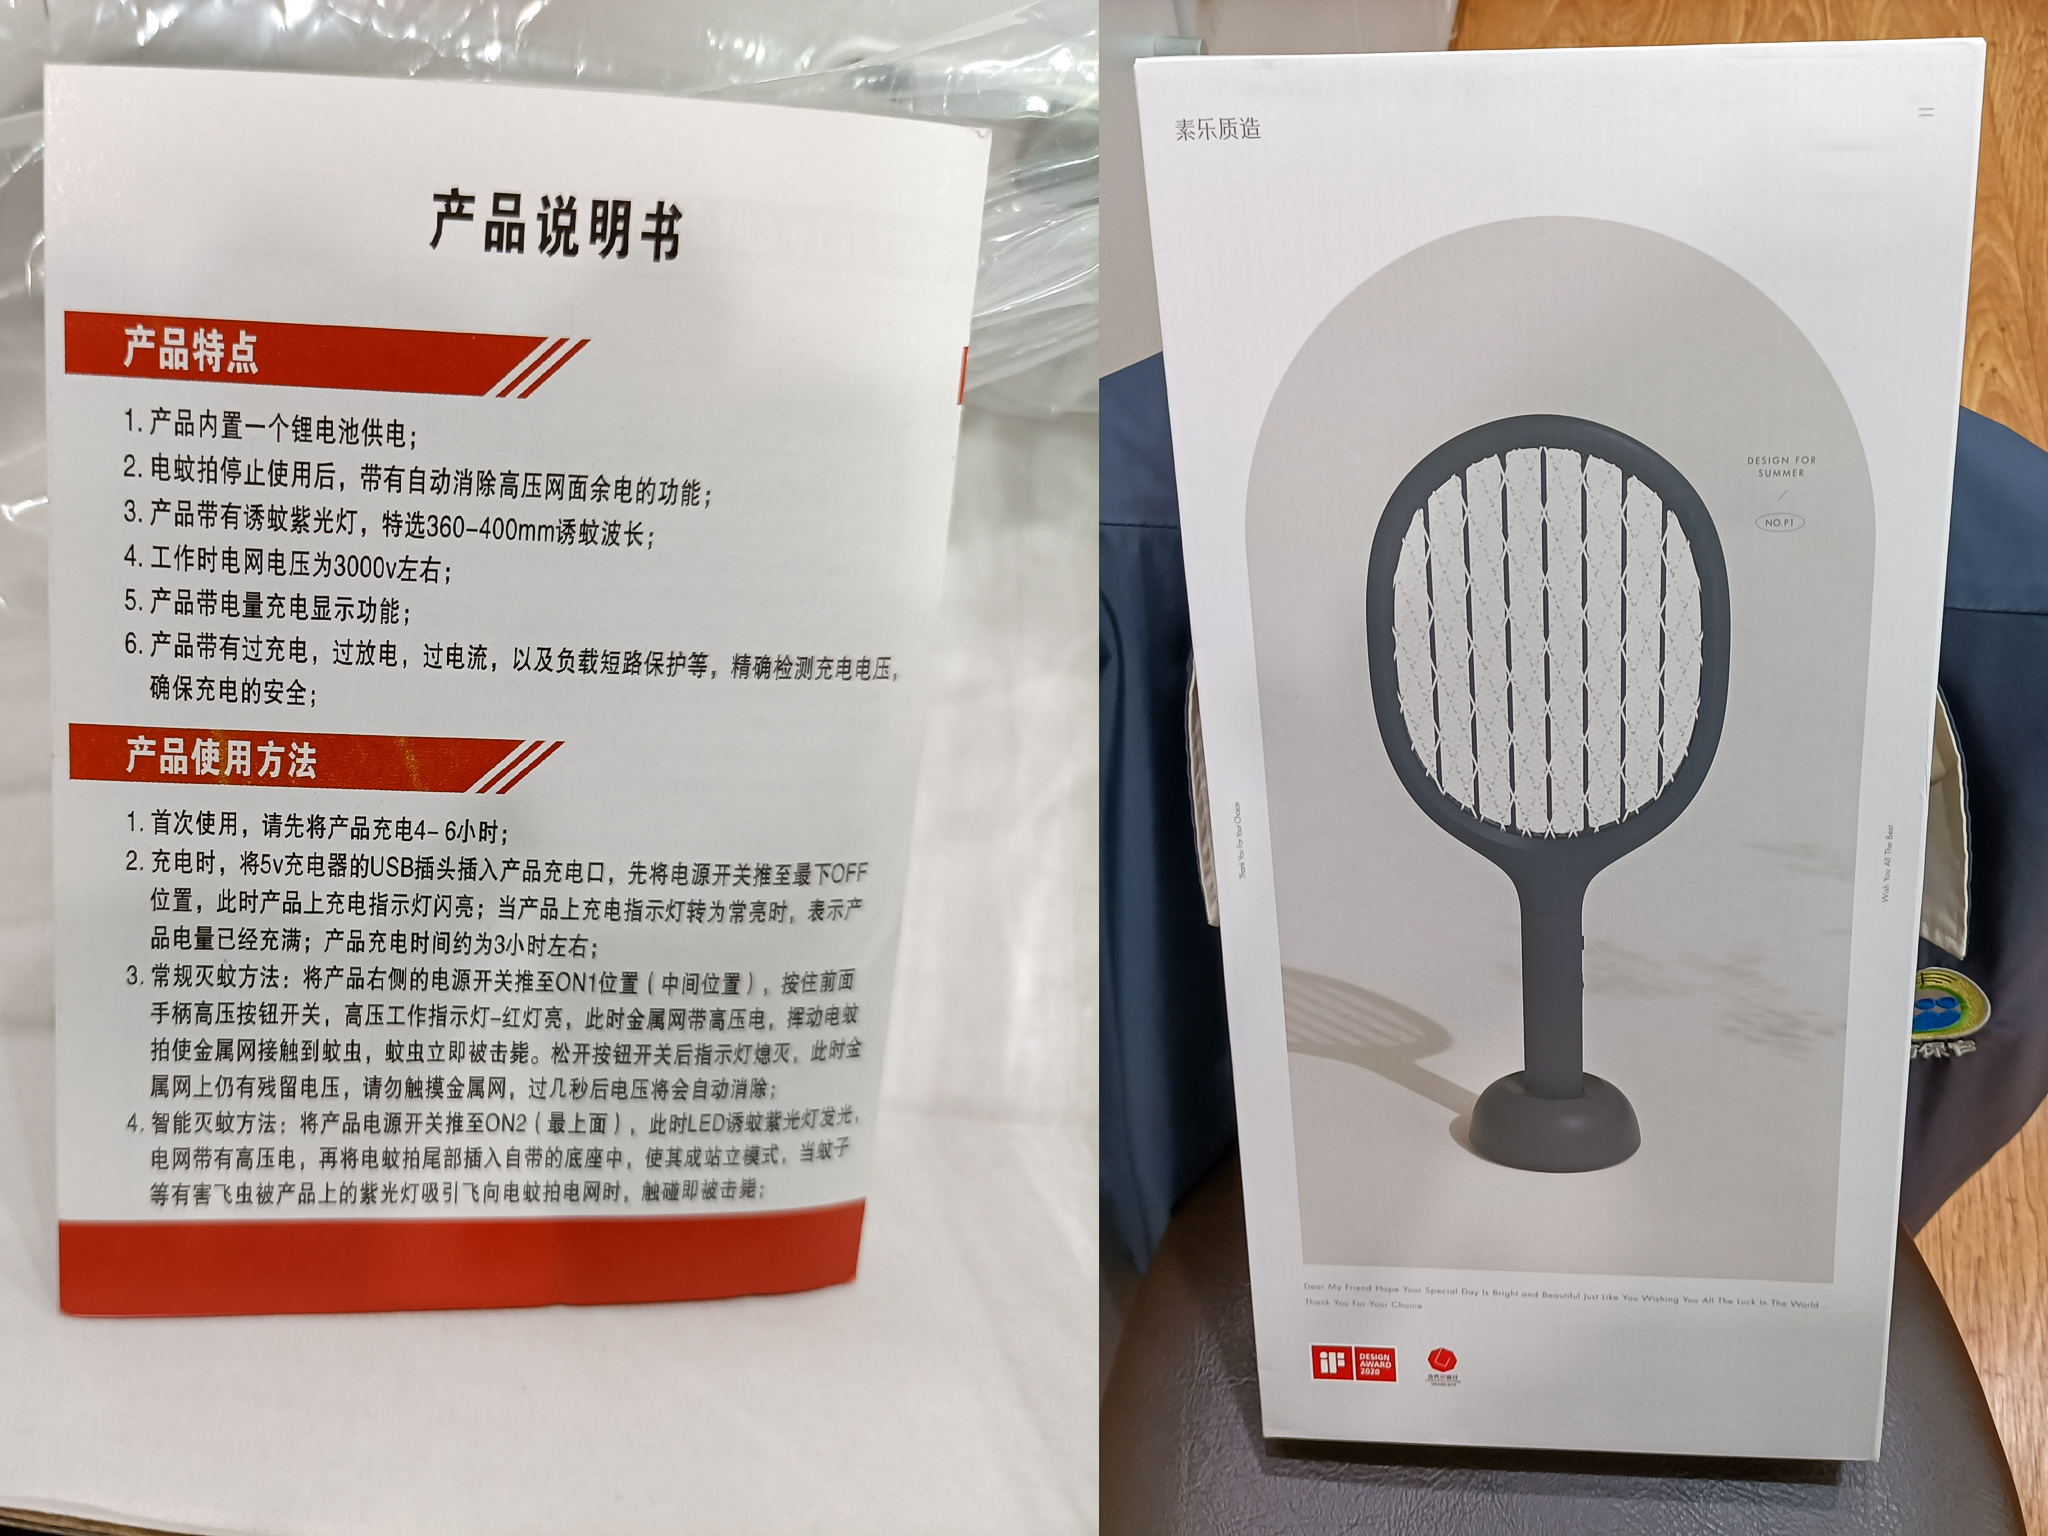 電蚊拍商品未標示製造年份、製造號碼、產地、廠商資訊、使用方法及注意事項內容未以繁體中文標示。